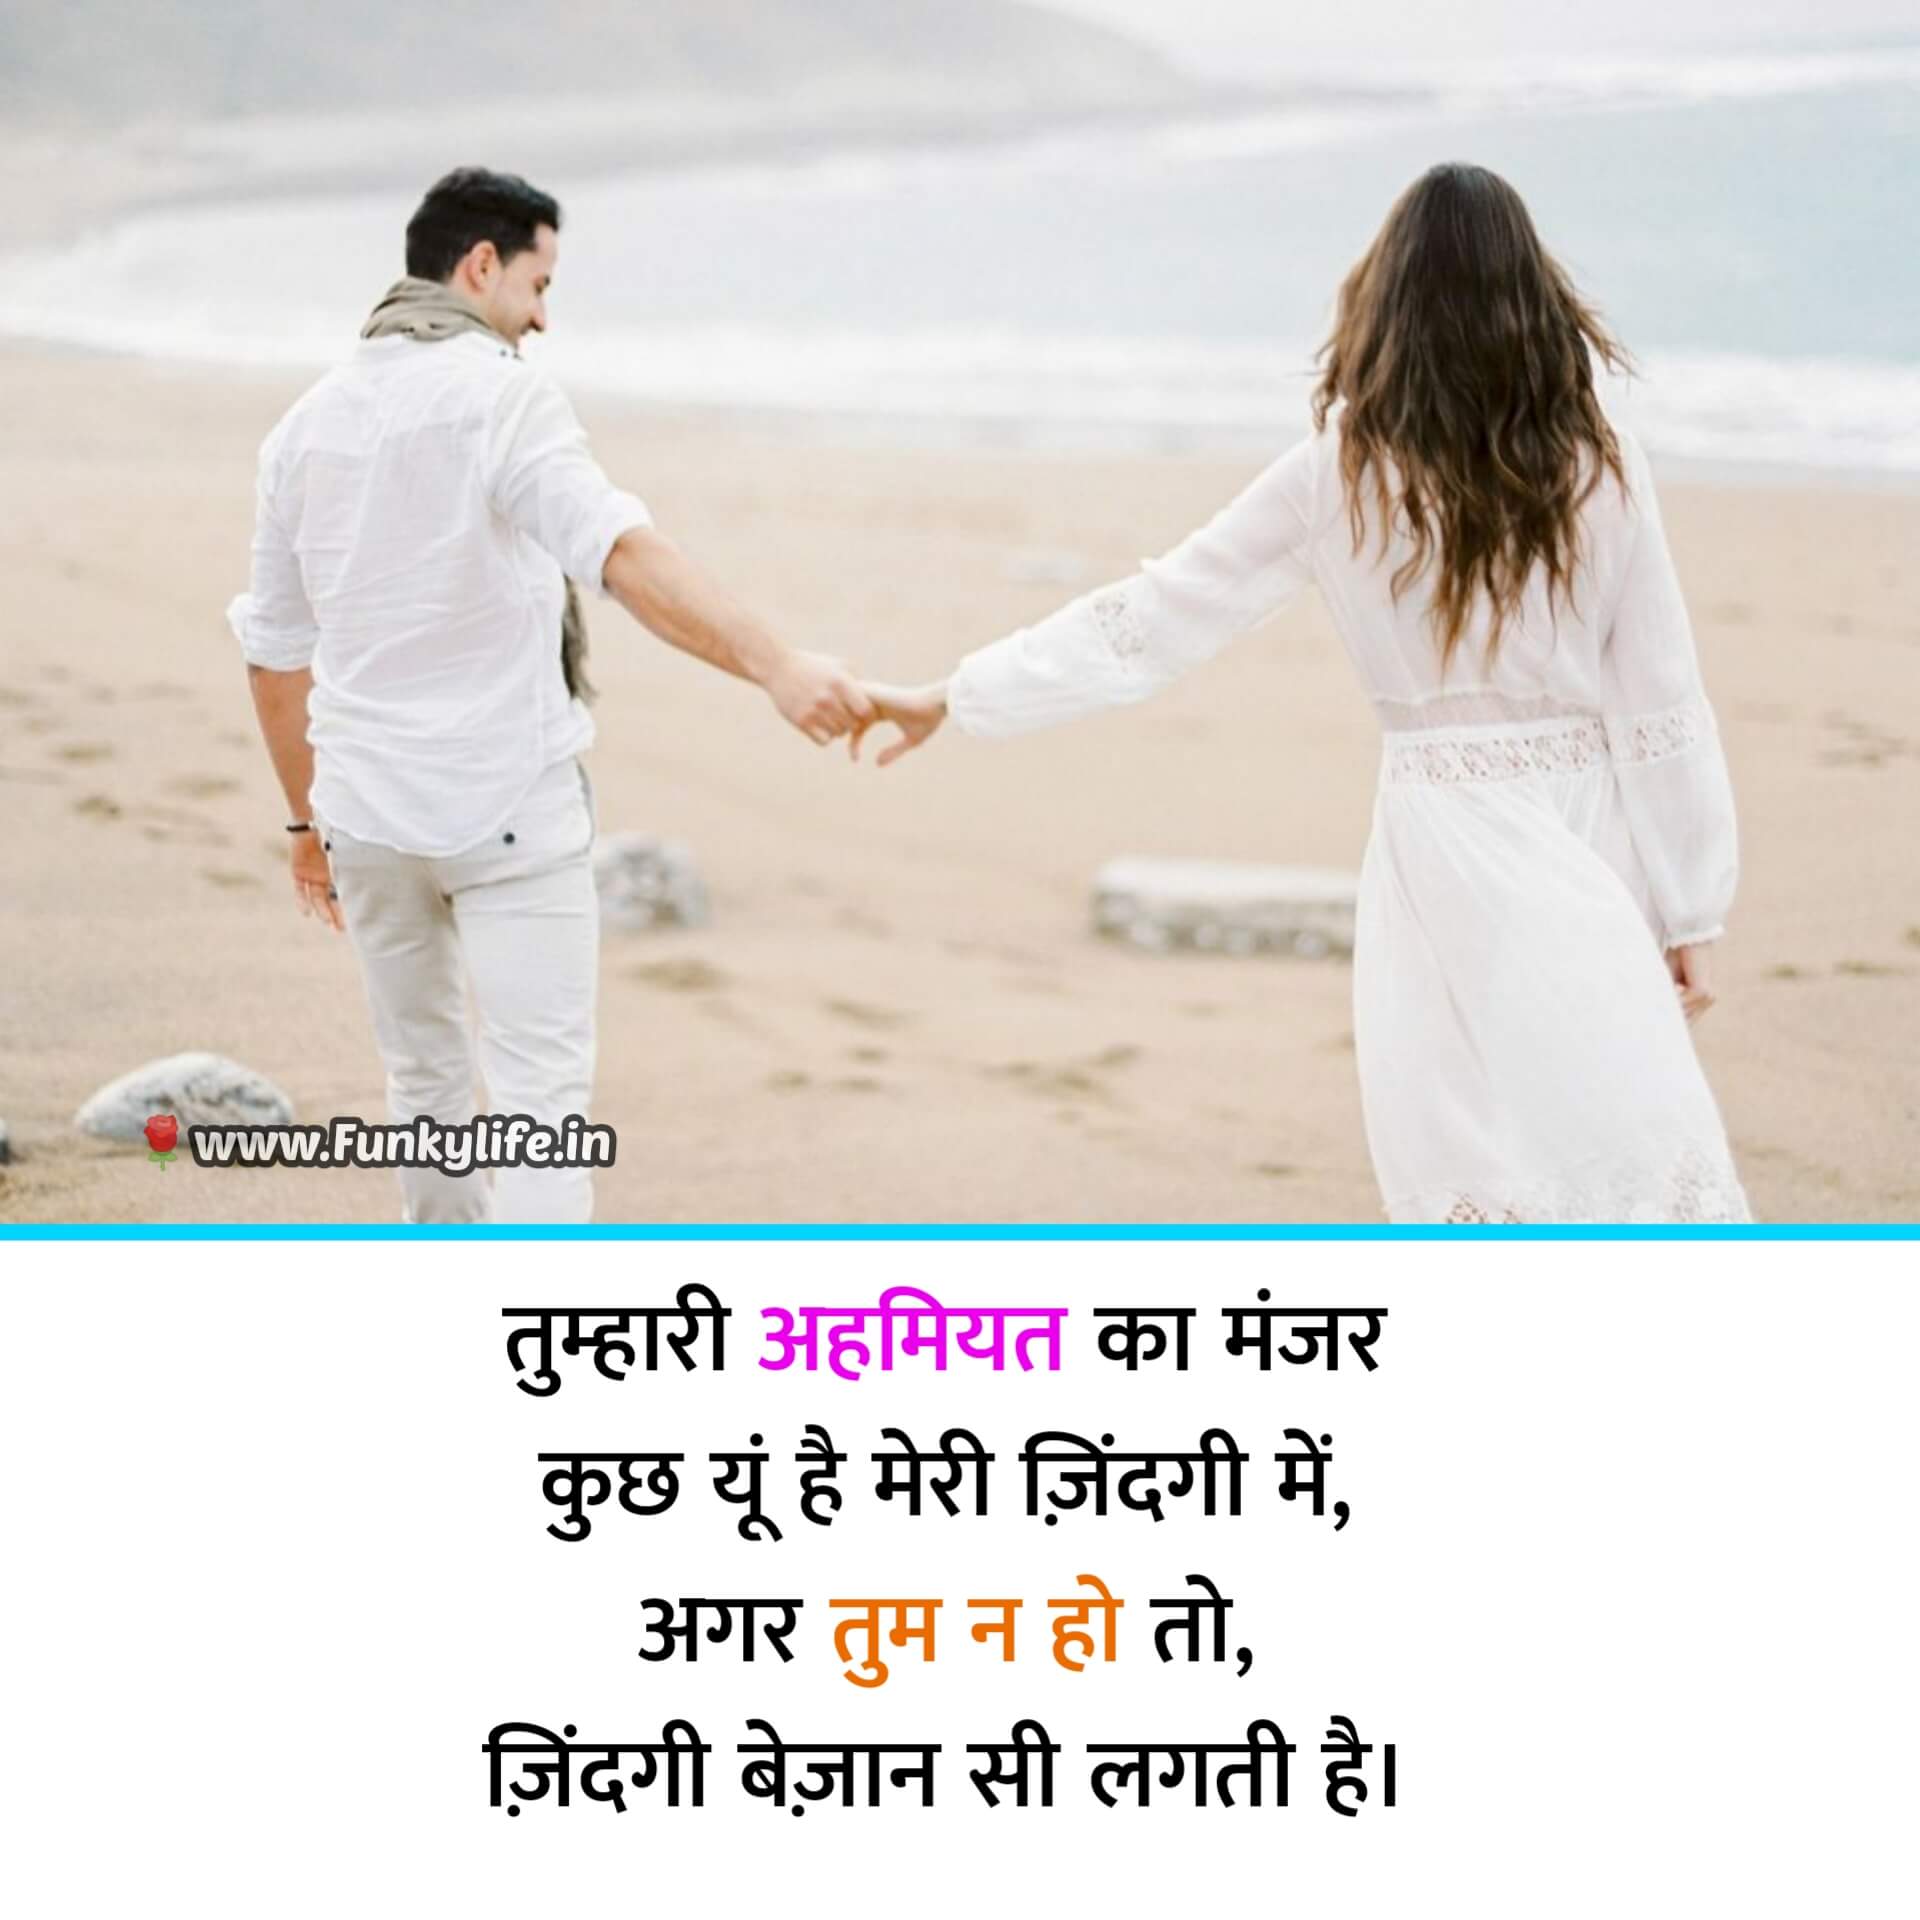 True Love Romantic Shayari